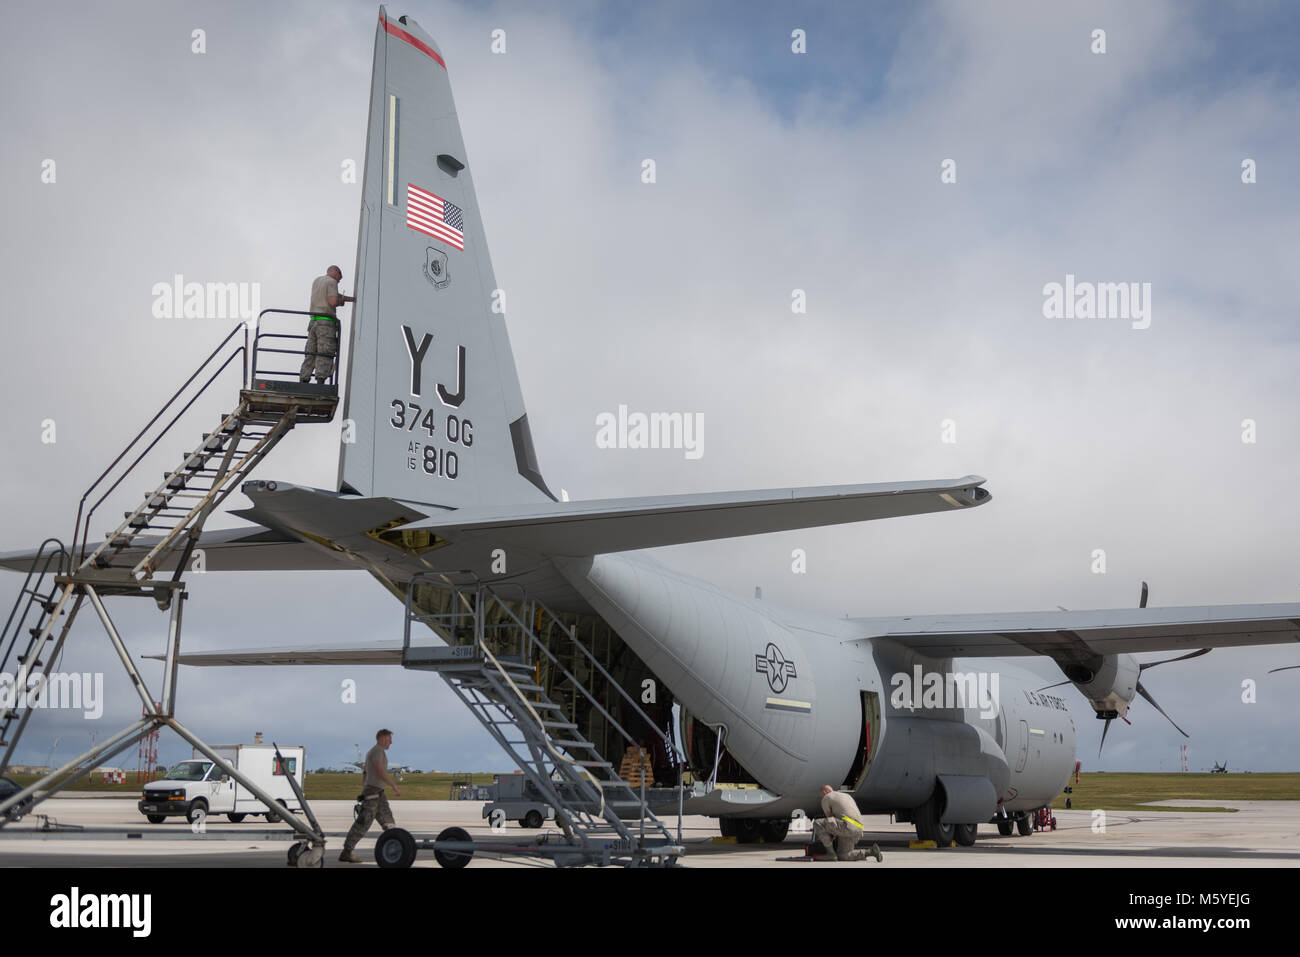 Aviateurs affecté à la 374e groupe d'entretien effectuer la maintenance d'un U.S. Air Force C-130J Super Hercules affecté à la 36e Escadron de transport aérien au cours de l'effort à faire face au nord en 2018 à la base aérienne d'Andersen, de Guam, le 22 février. CN18 permet aux États-Unis et les forces alliées à la pratique de l'aide humanitaire et secours en cas de catastrophe les efforts de préparation et de se remettre des effets dévastateurs des catastrophes naturelles. (U.S. Air Force photo par un membre de la 1re classe Juan Torres Chardon) Banque D'Images